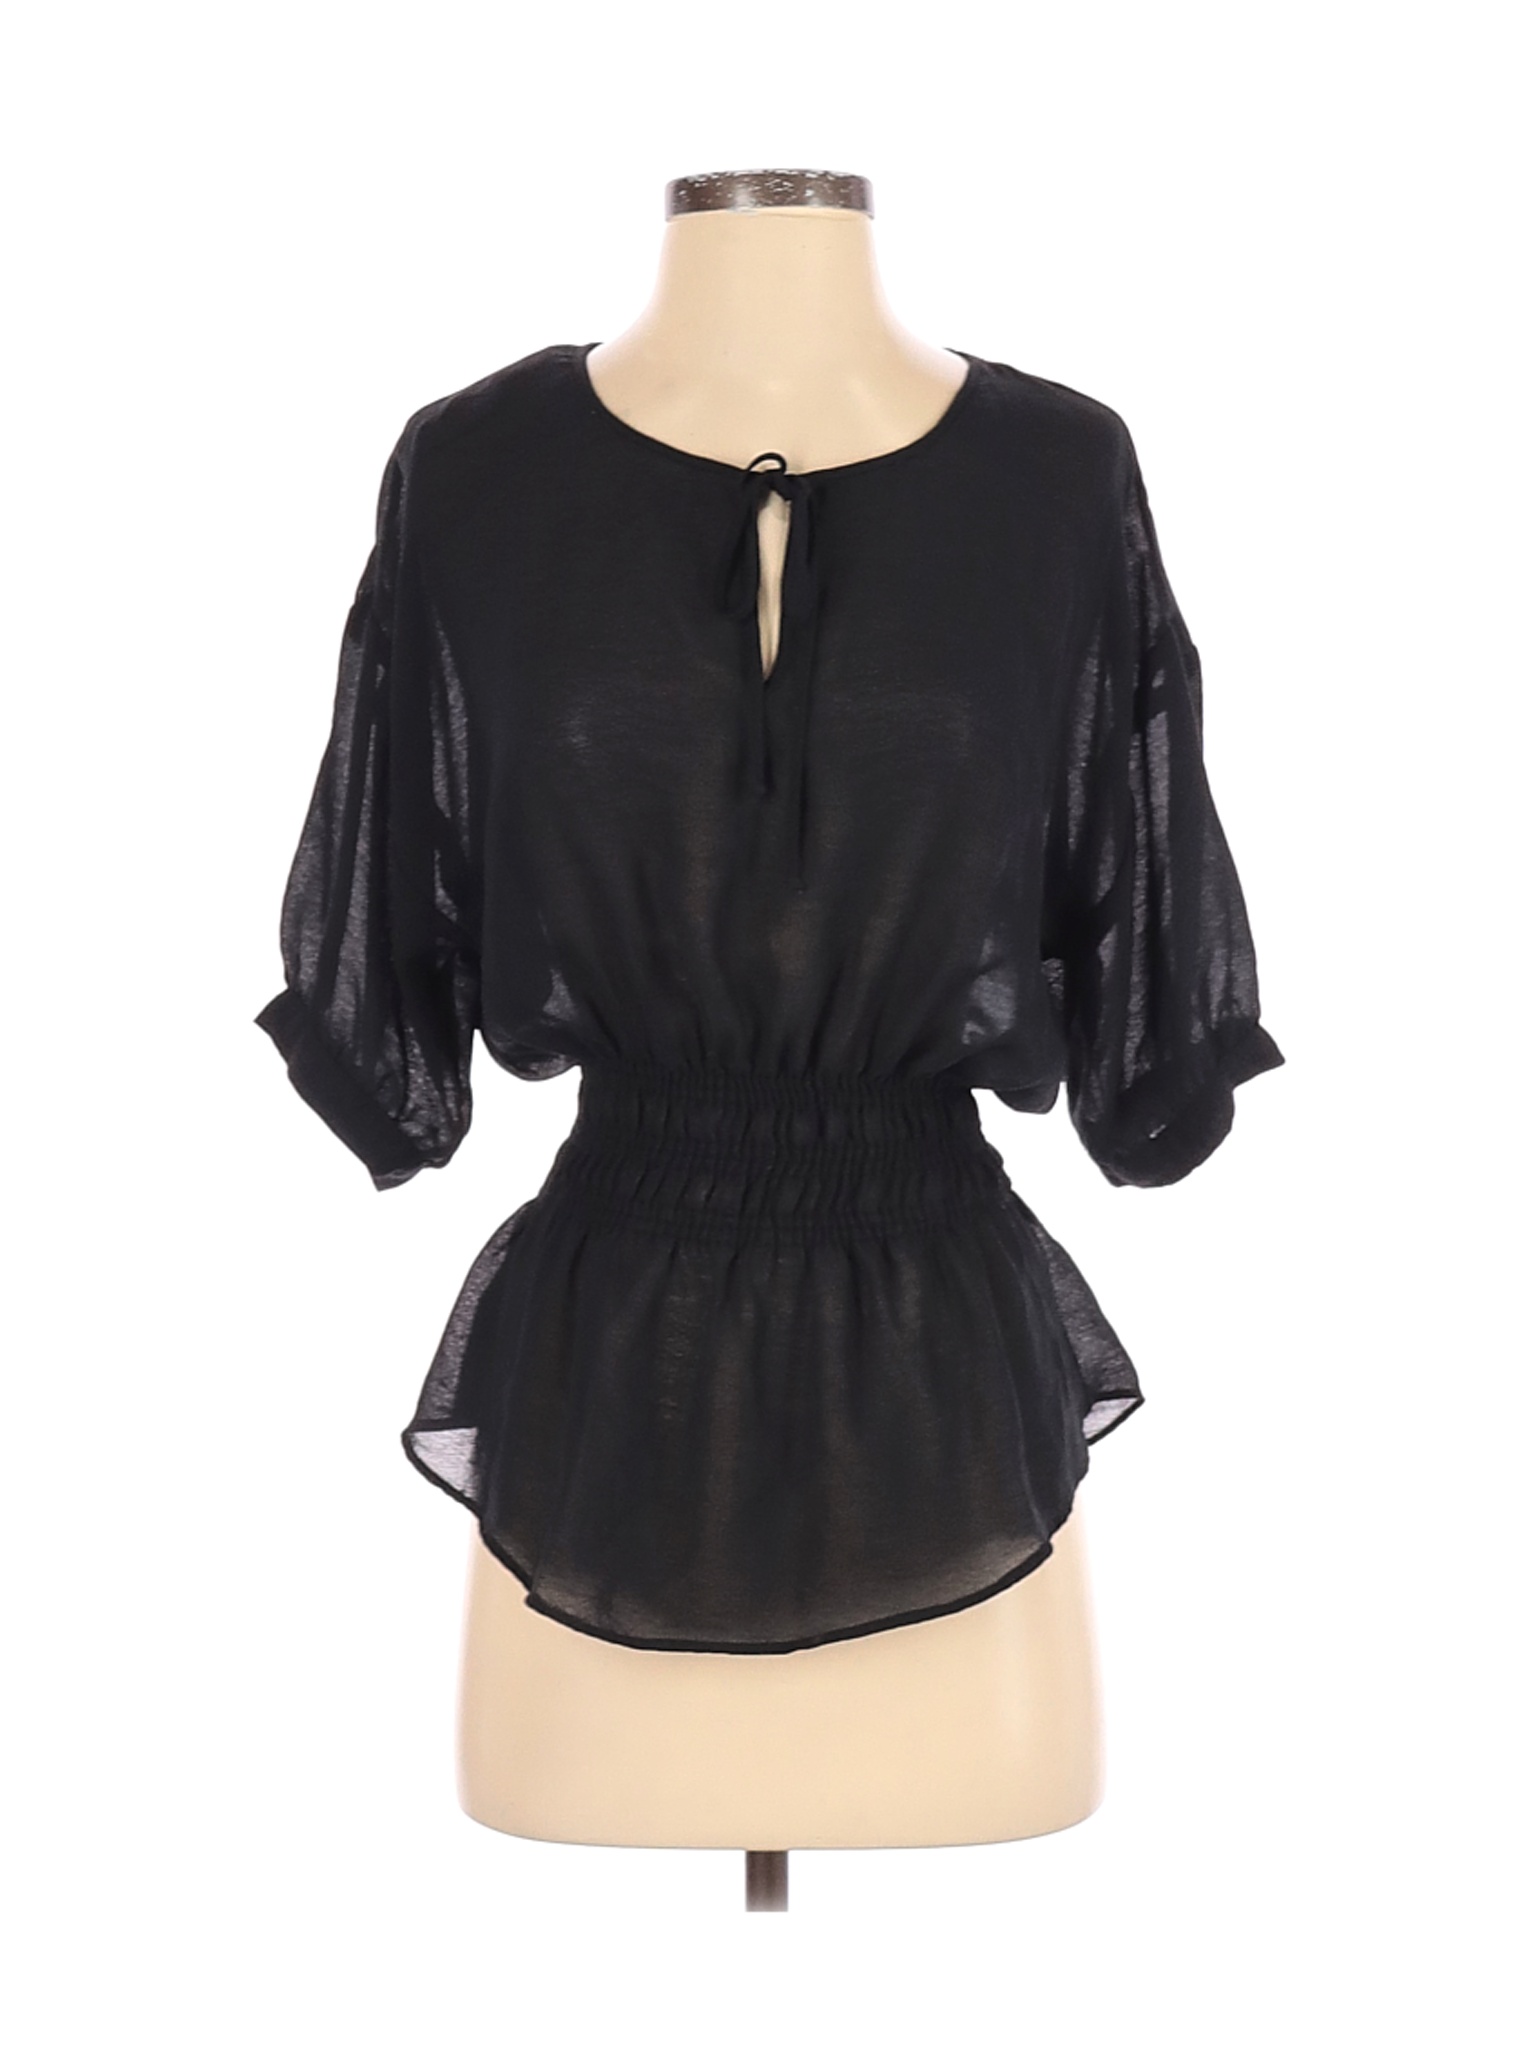 Zara Basic Women Black Short Sleeve Blouse S | eBay